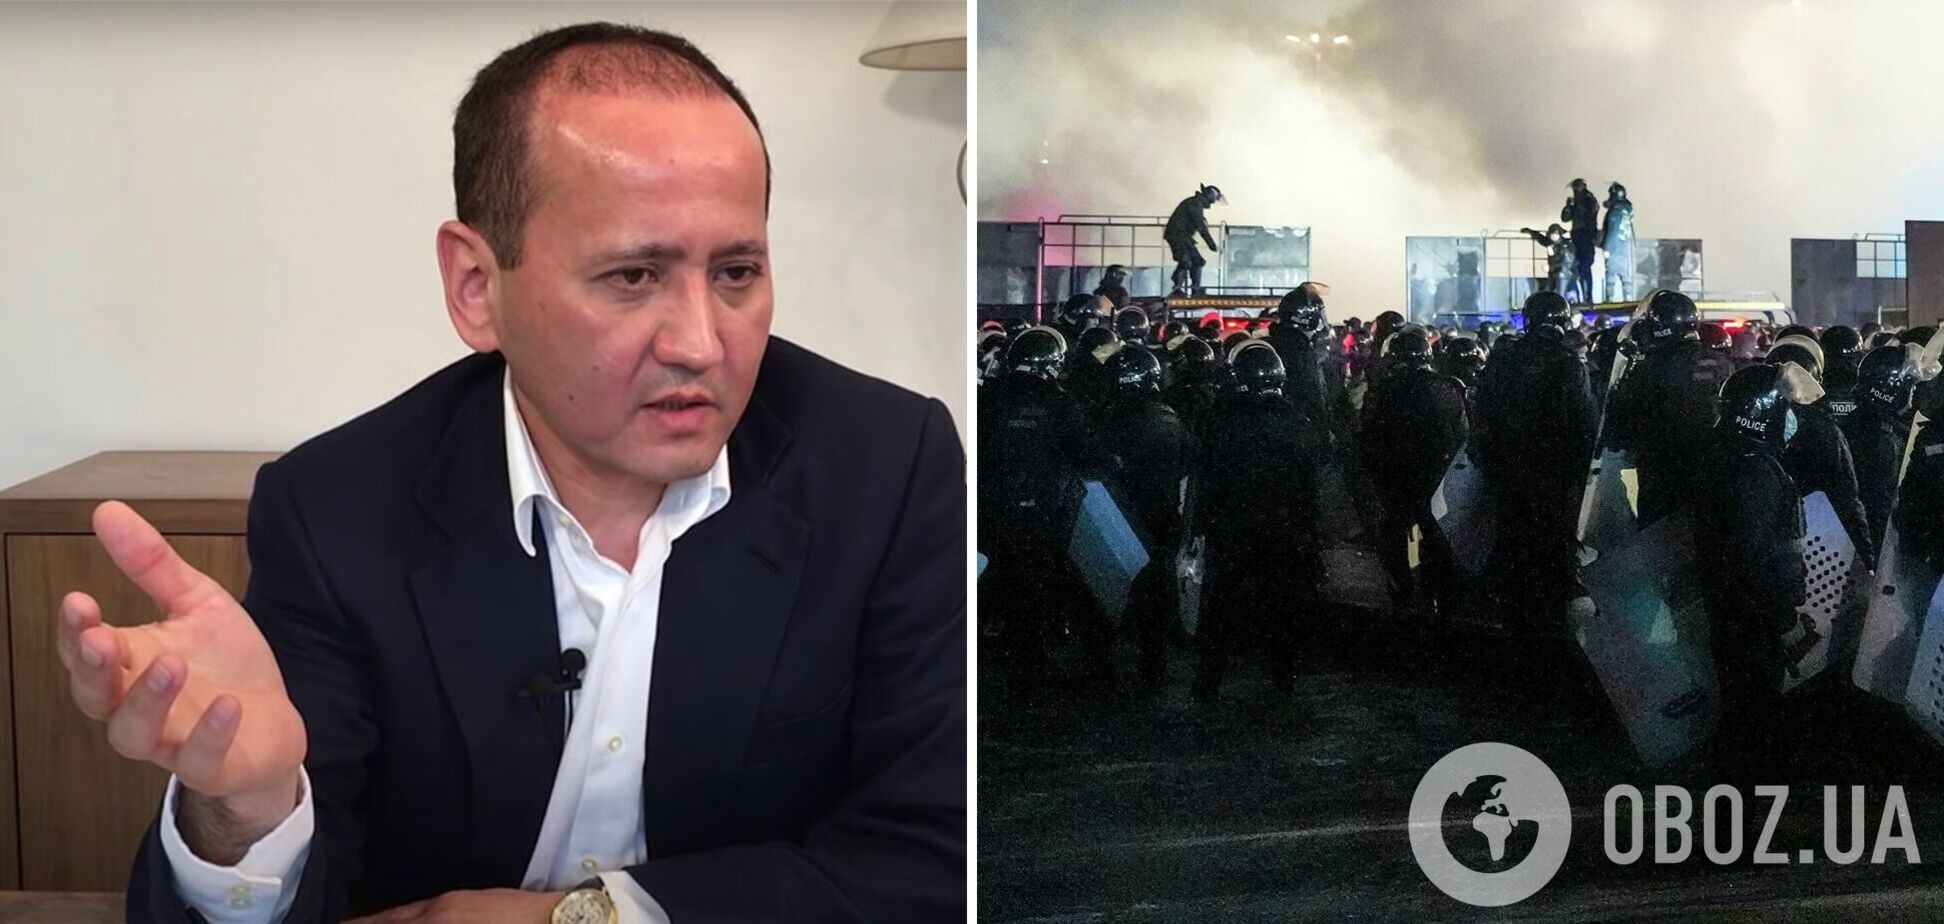 Мухтар Аблязов объявил себя лидером протестов в Казахстане и назвал Россию оккупантом